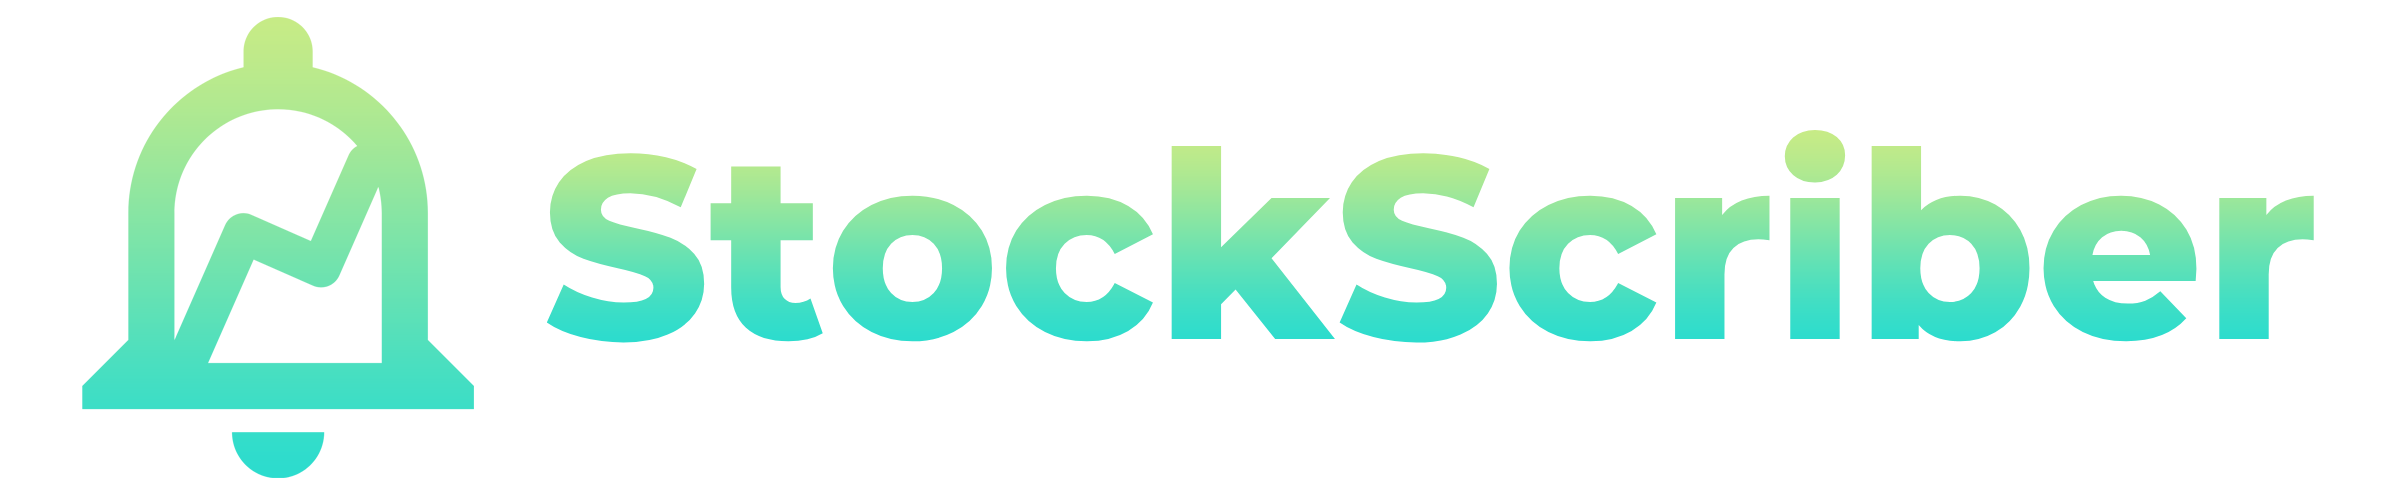 StockScriber logo